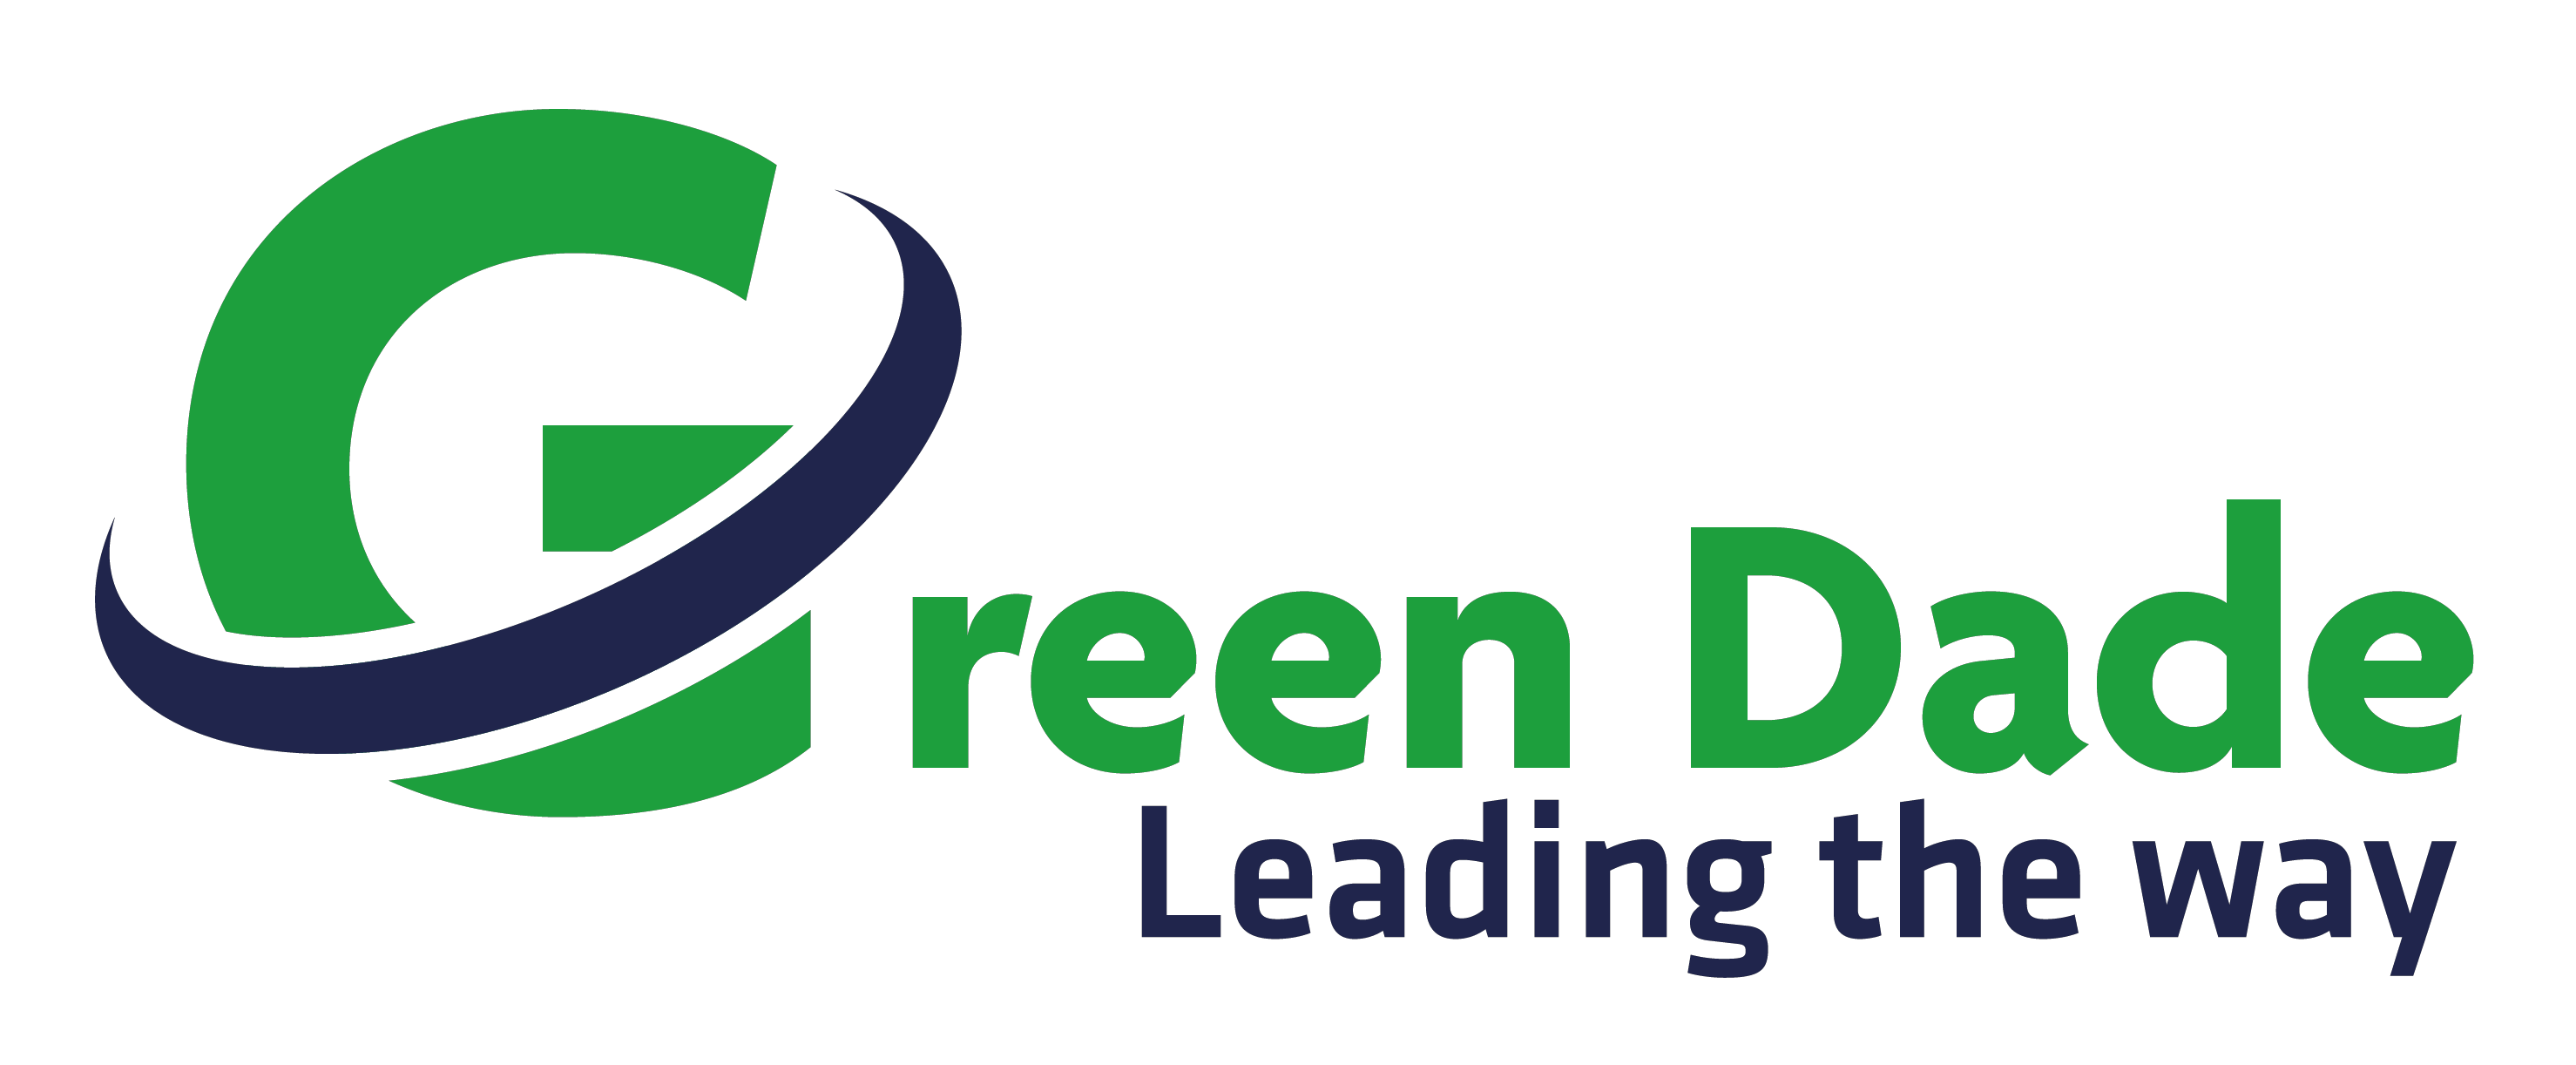 Green Dade, Inc.